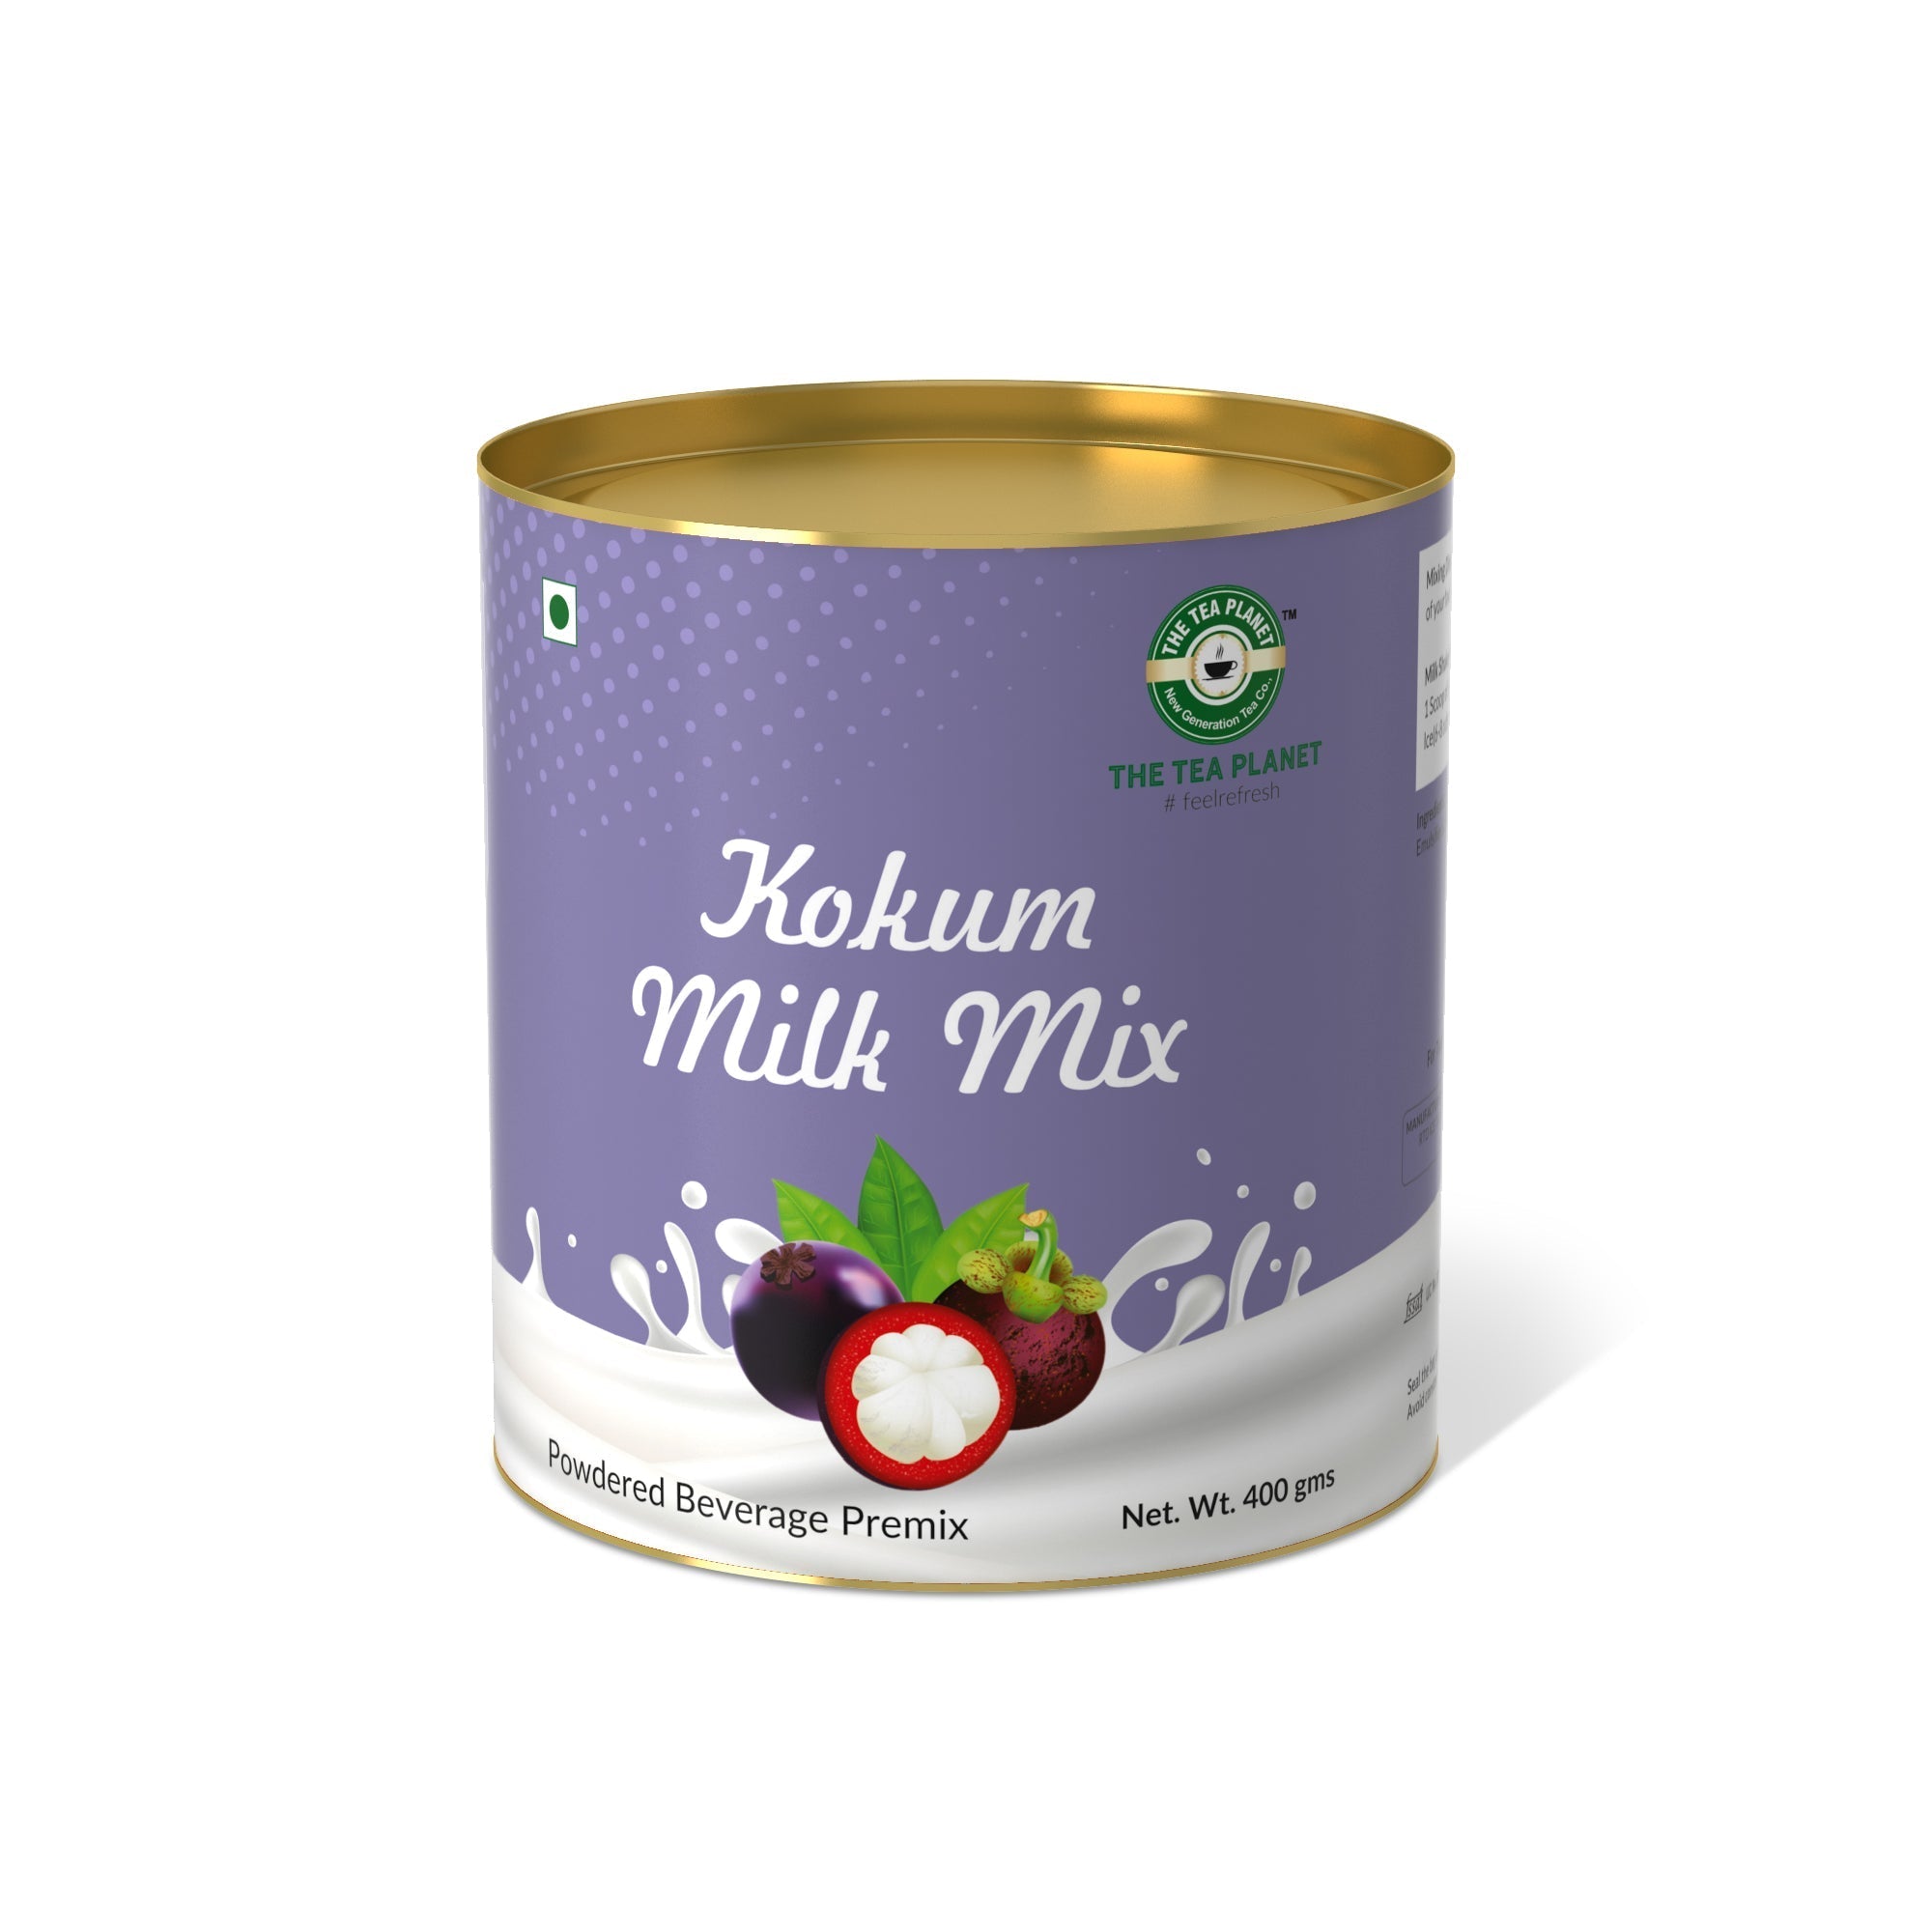 Kokum Milk Mix - 800 gms